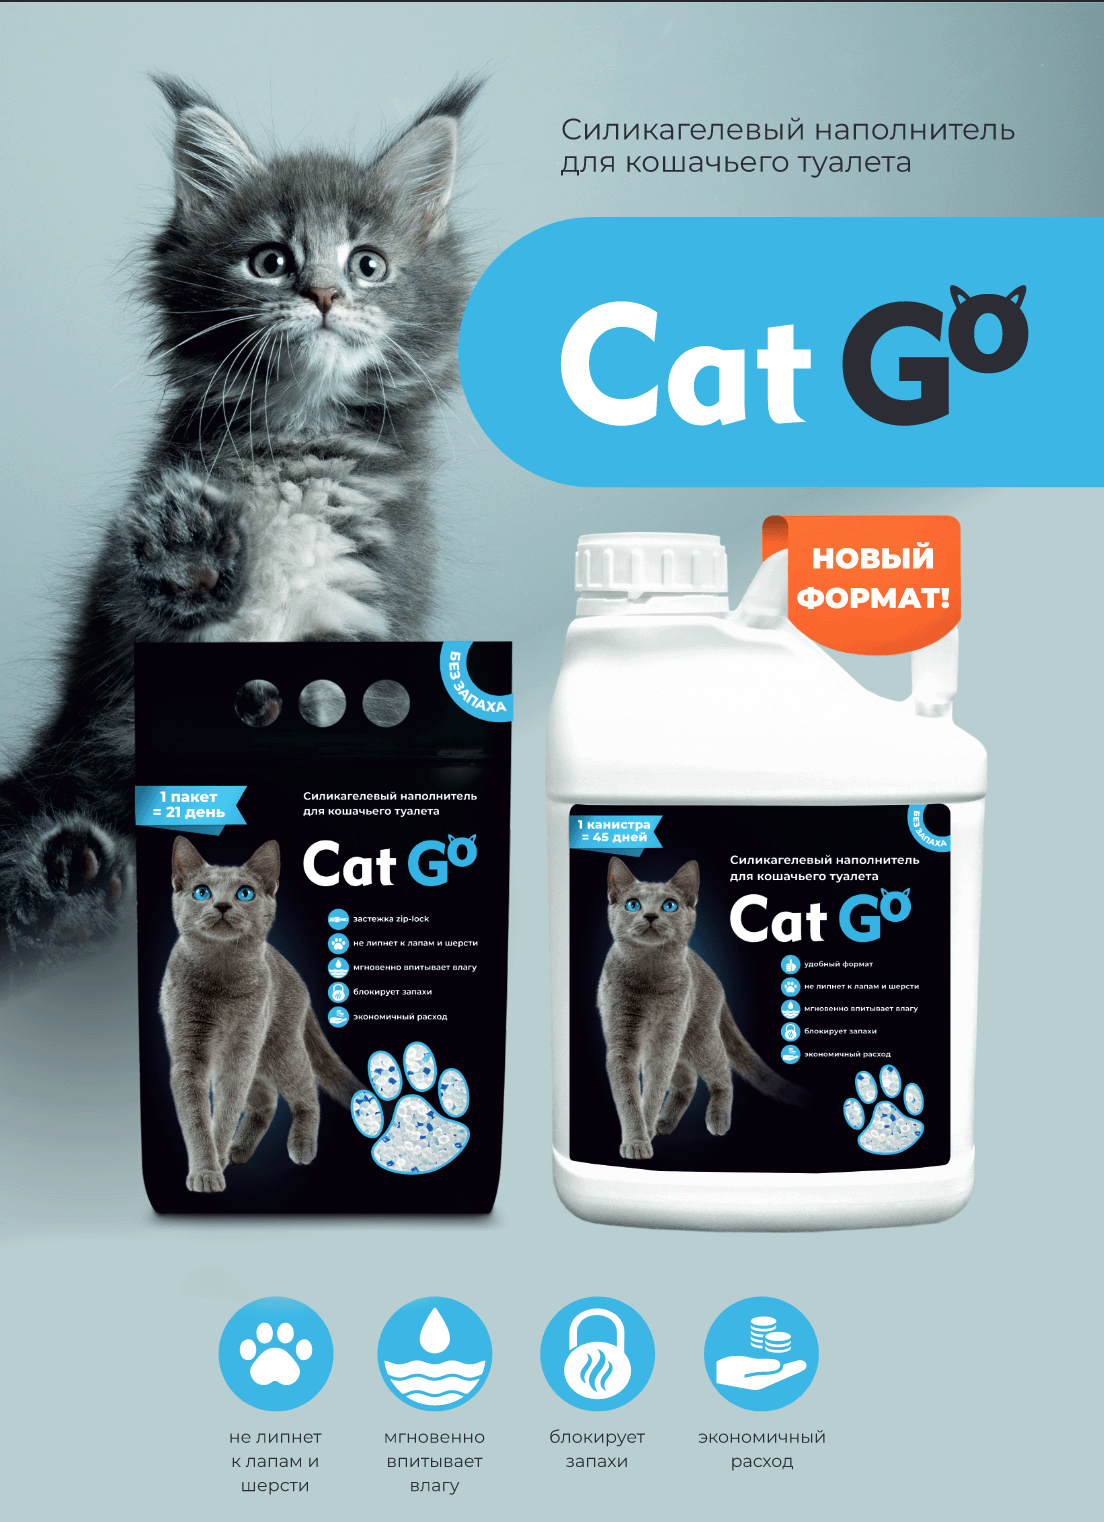 купить Наполнитель для кошачьего туалета Cat Go с бесплатной доставкой в Калининграде